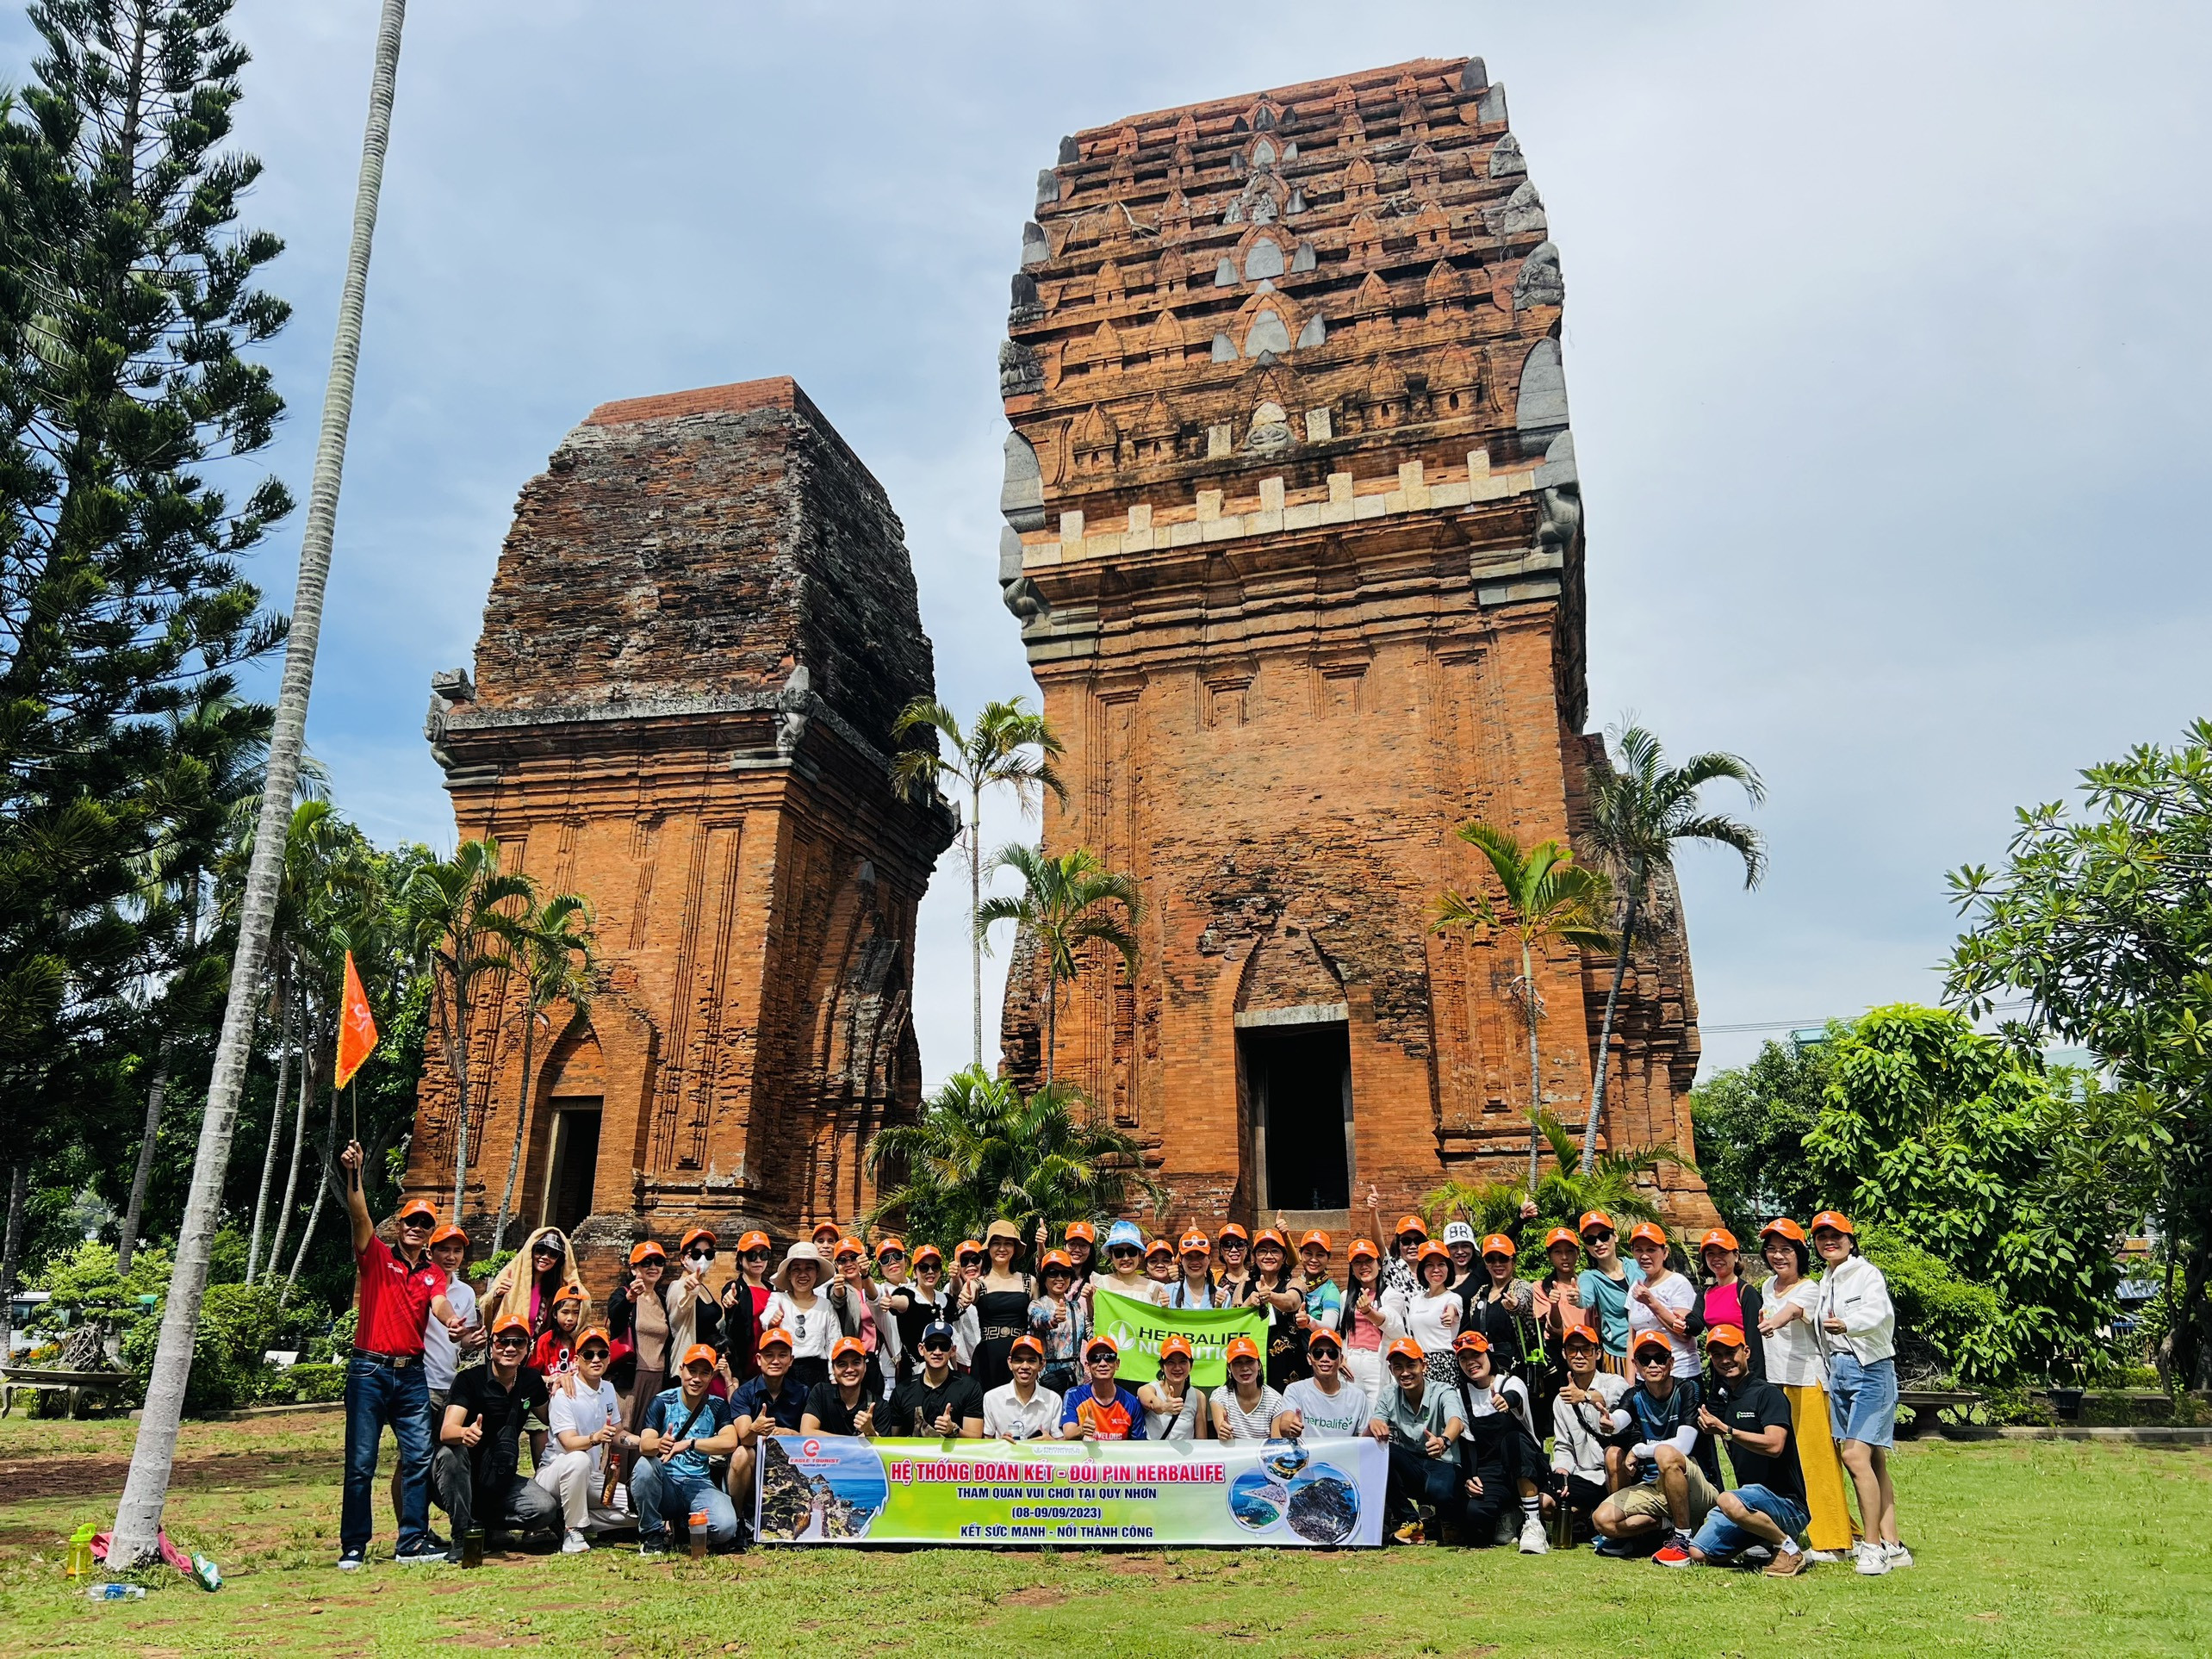 Du lịch Đại Bàng đồng hành cùng đoàn du khách thuộc chuỗi hệ thống Herbalife Huế - Nha Trang - Đồng Nai trong chương trình du lịch hè 2023 tại Quy Nhơn